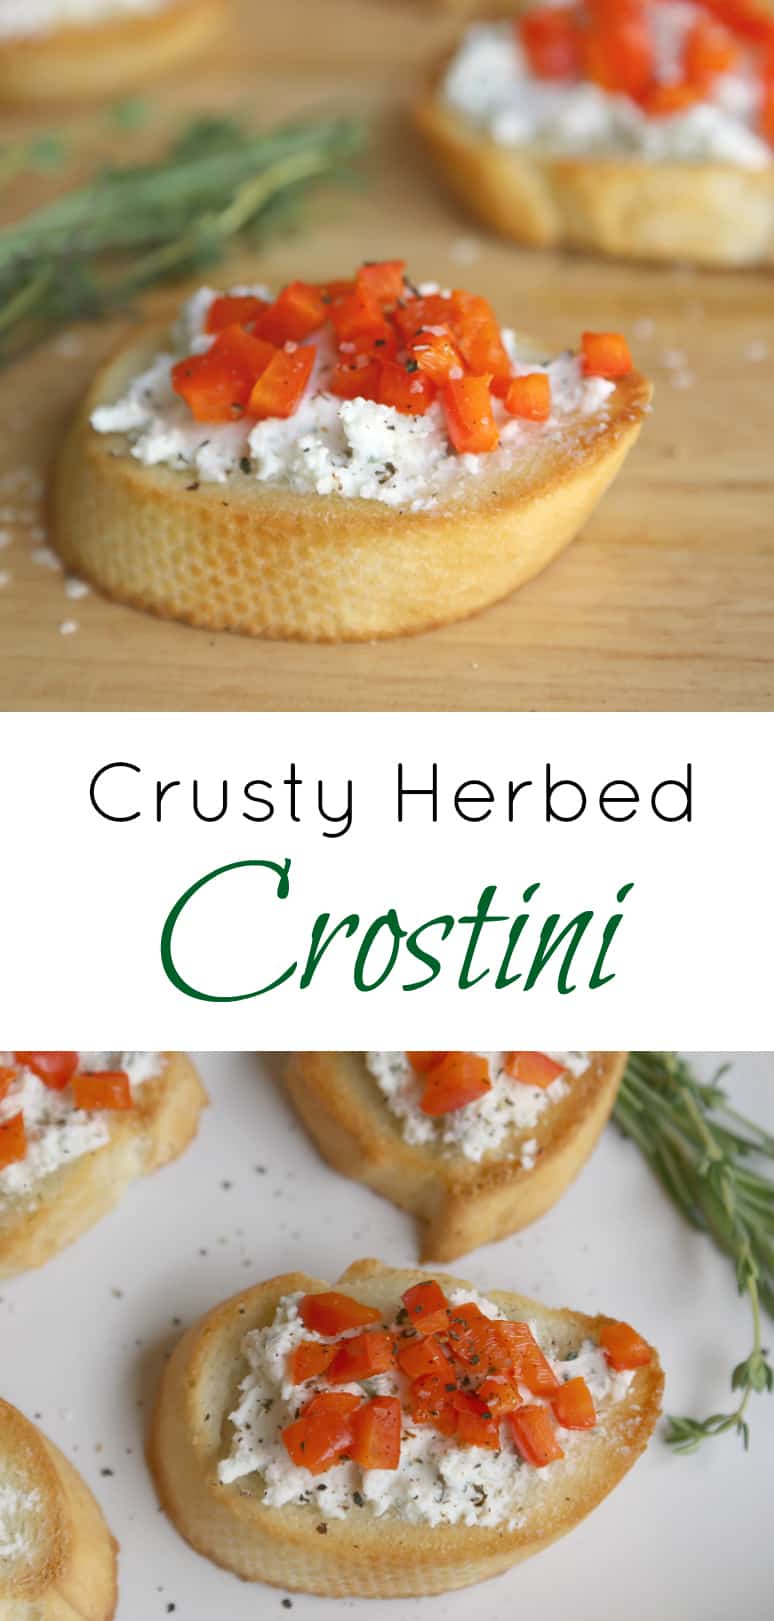 crusty herbed crostini appetizer recipe